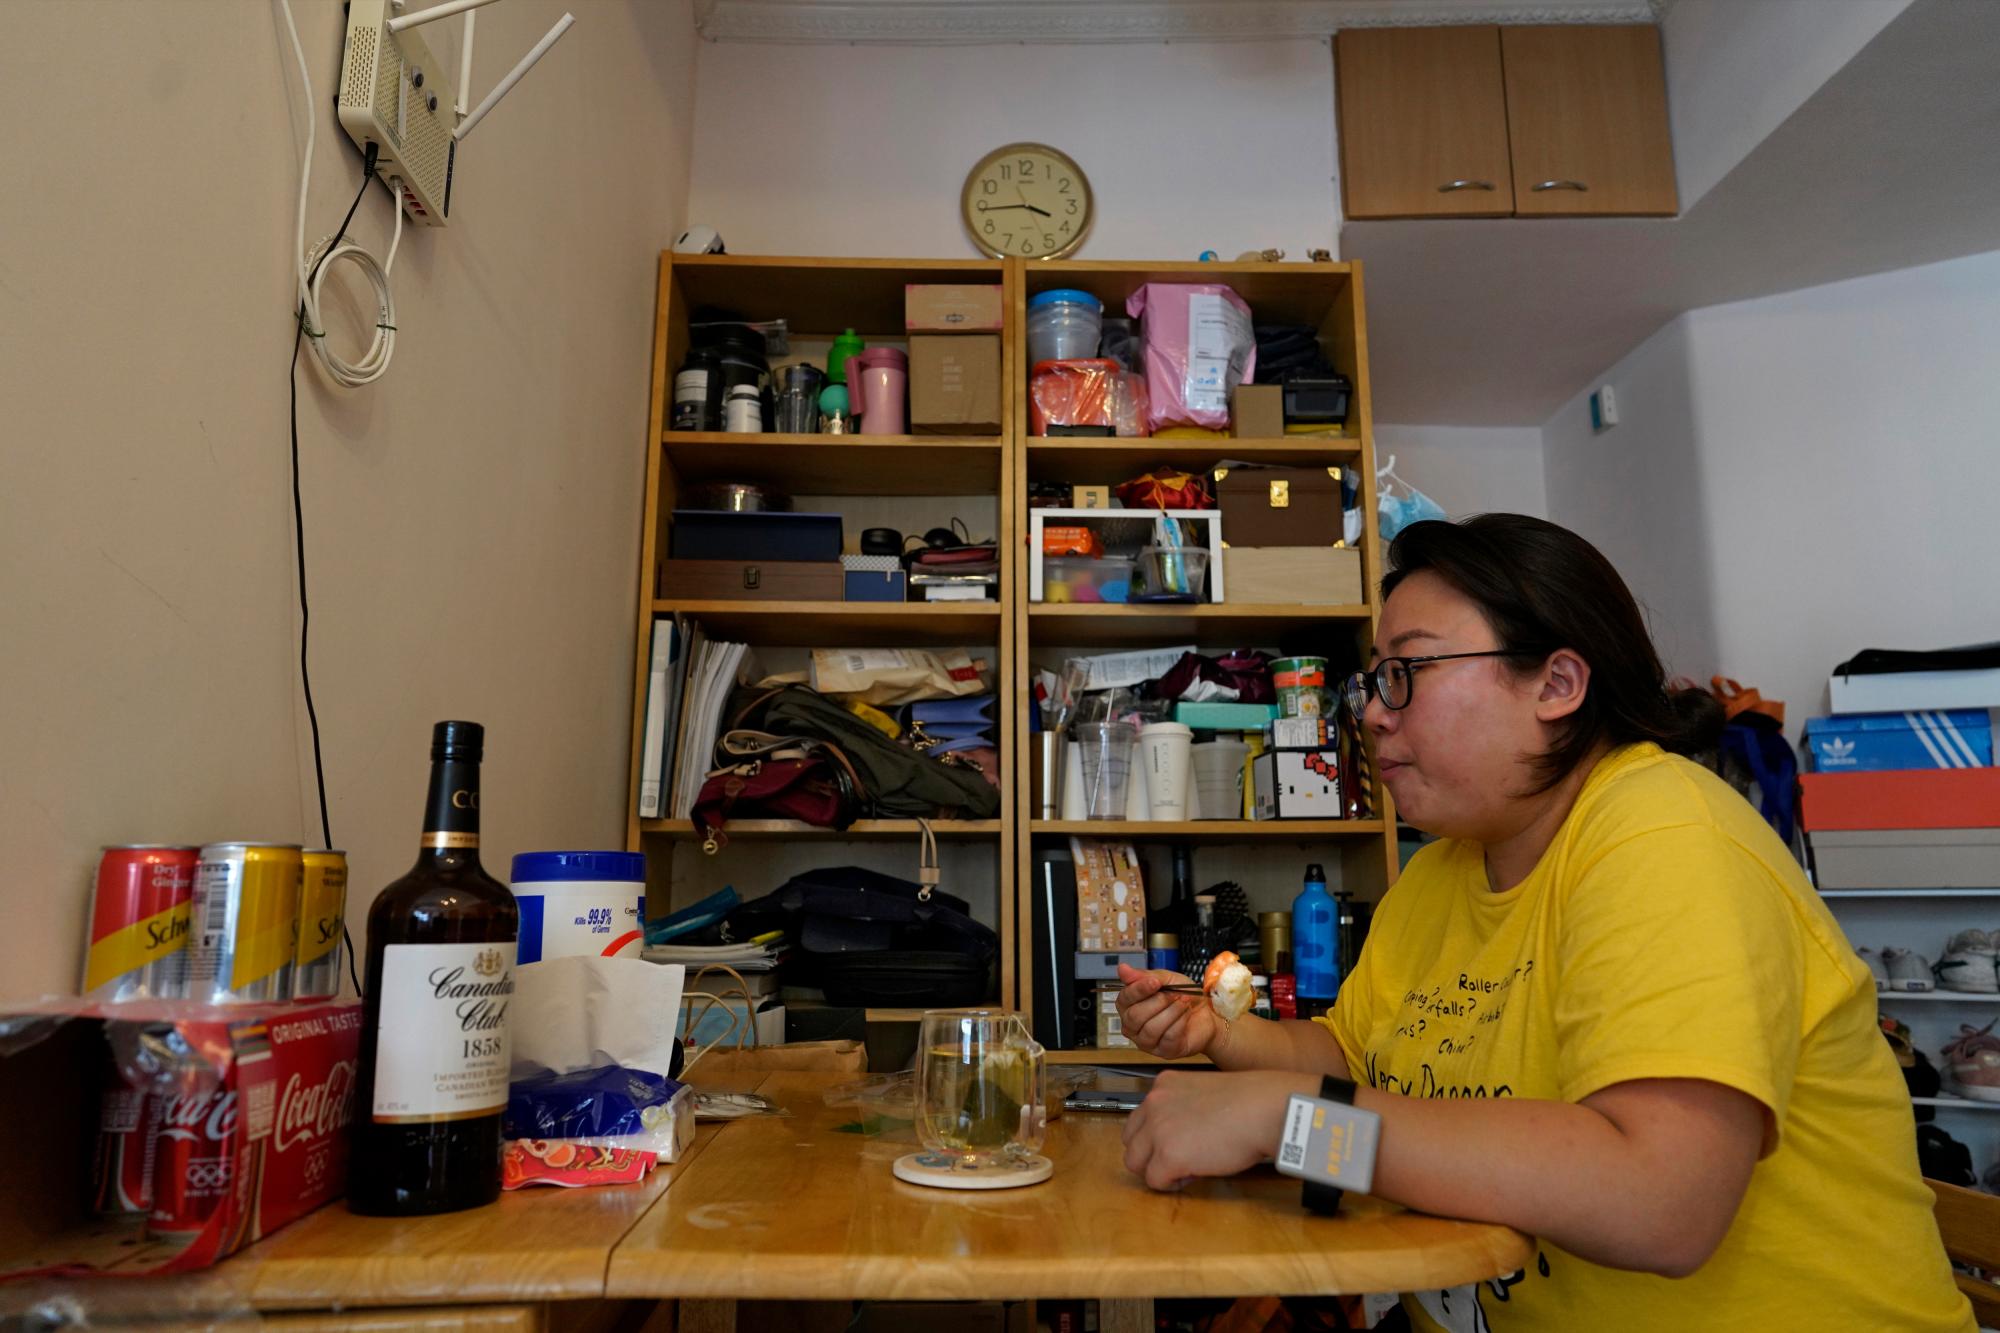 La reportera de Associated Press, Zen Soo, come su almuerzo en la mesa del comedor en su casa mientras sirve una cuarentena domiciliaria de dos semanas en Hong Kong, el 17 de abril de 2020. Hong Kong emitió pulseras de cuarentena para monitorear a los residentes que regresan de la ciudad mientras cumplen su obligación 14 cuarentena diaria, en un intento por frenar las transmisiones locales de COVID-19 durante la pandemia. (Foto AP / Vincent Yu)